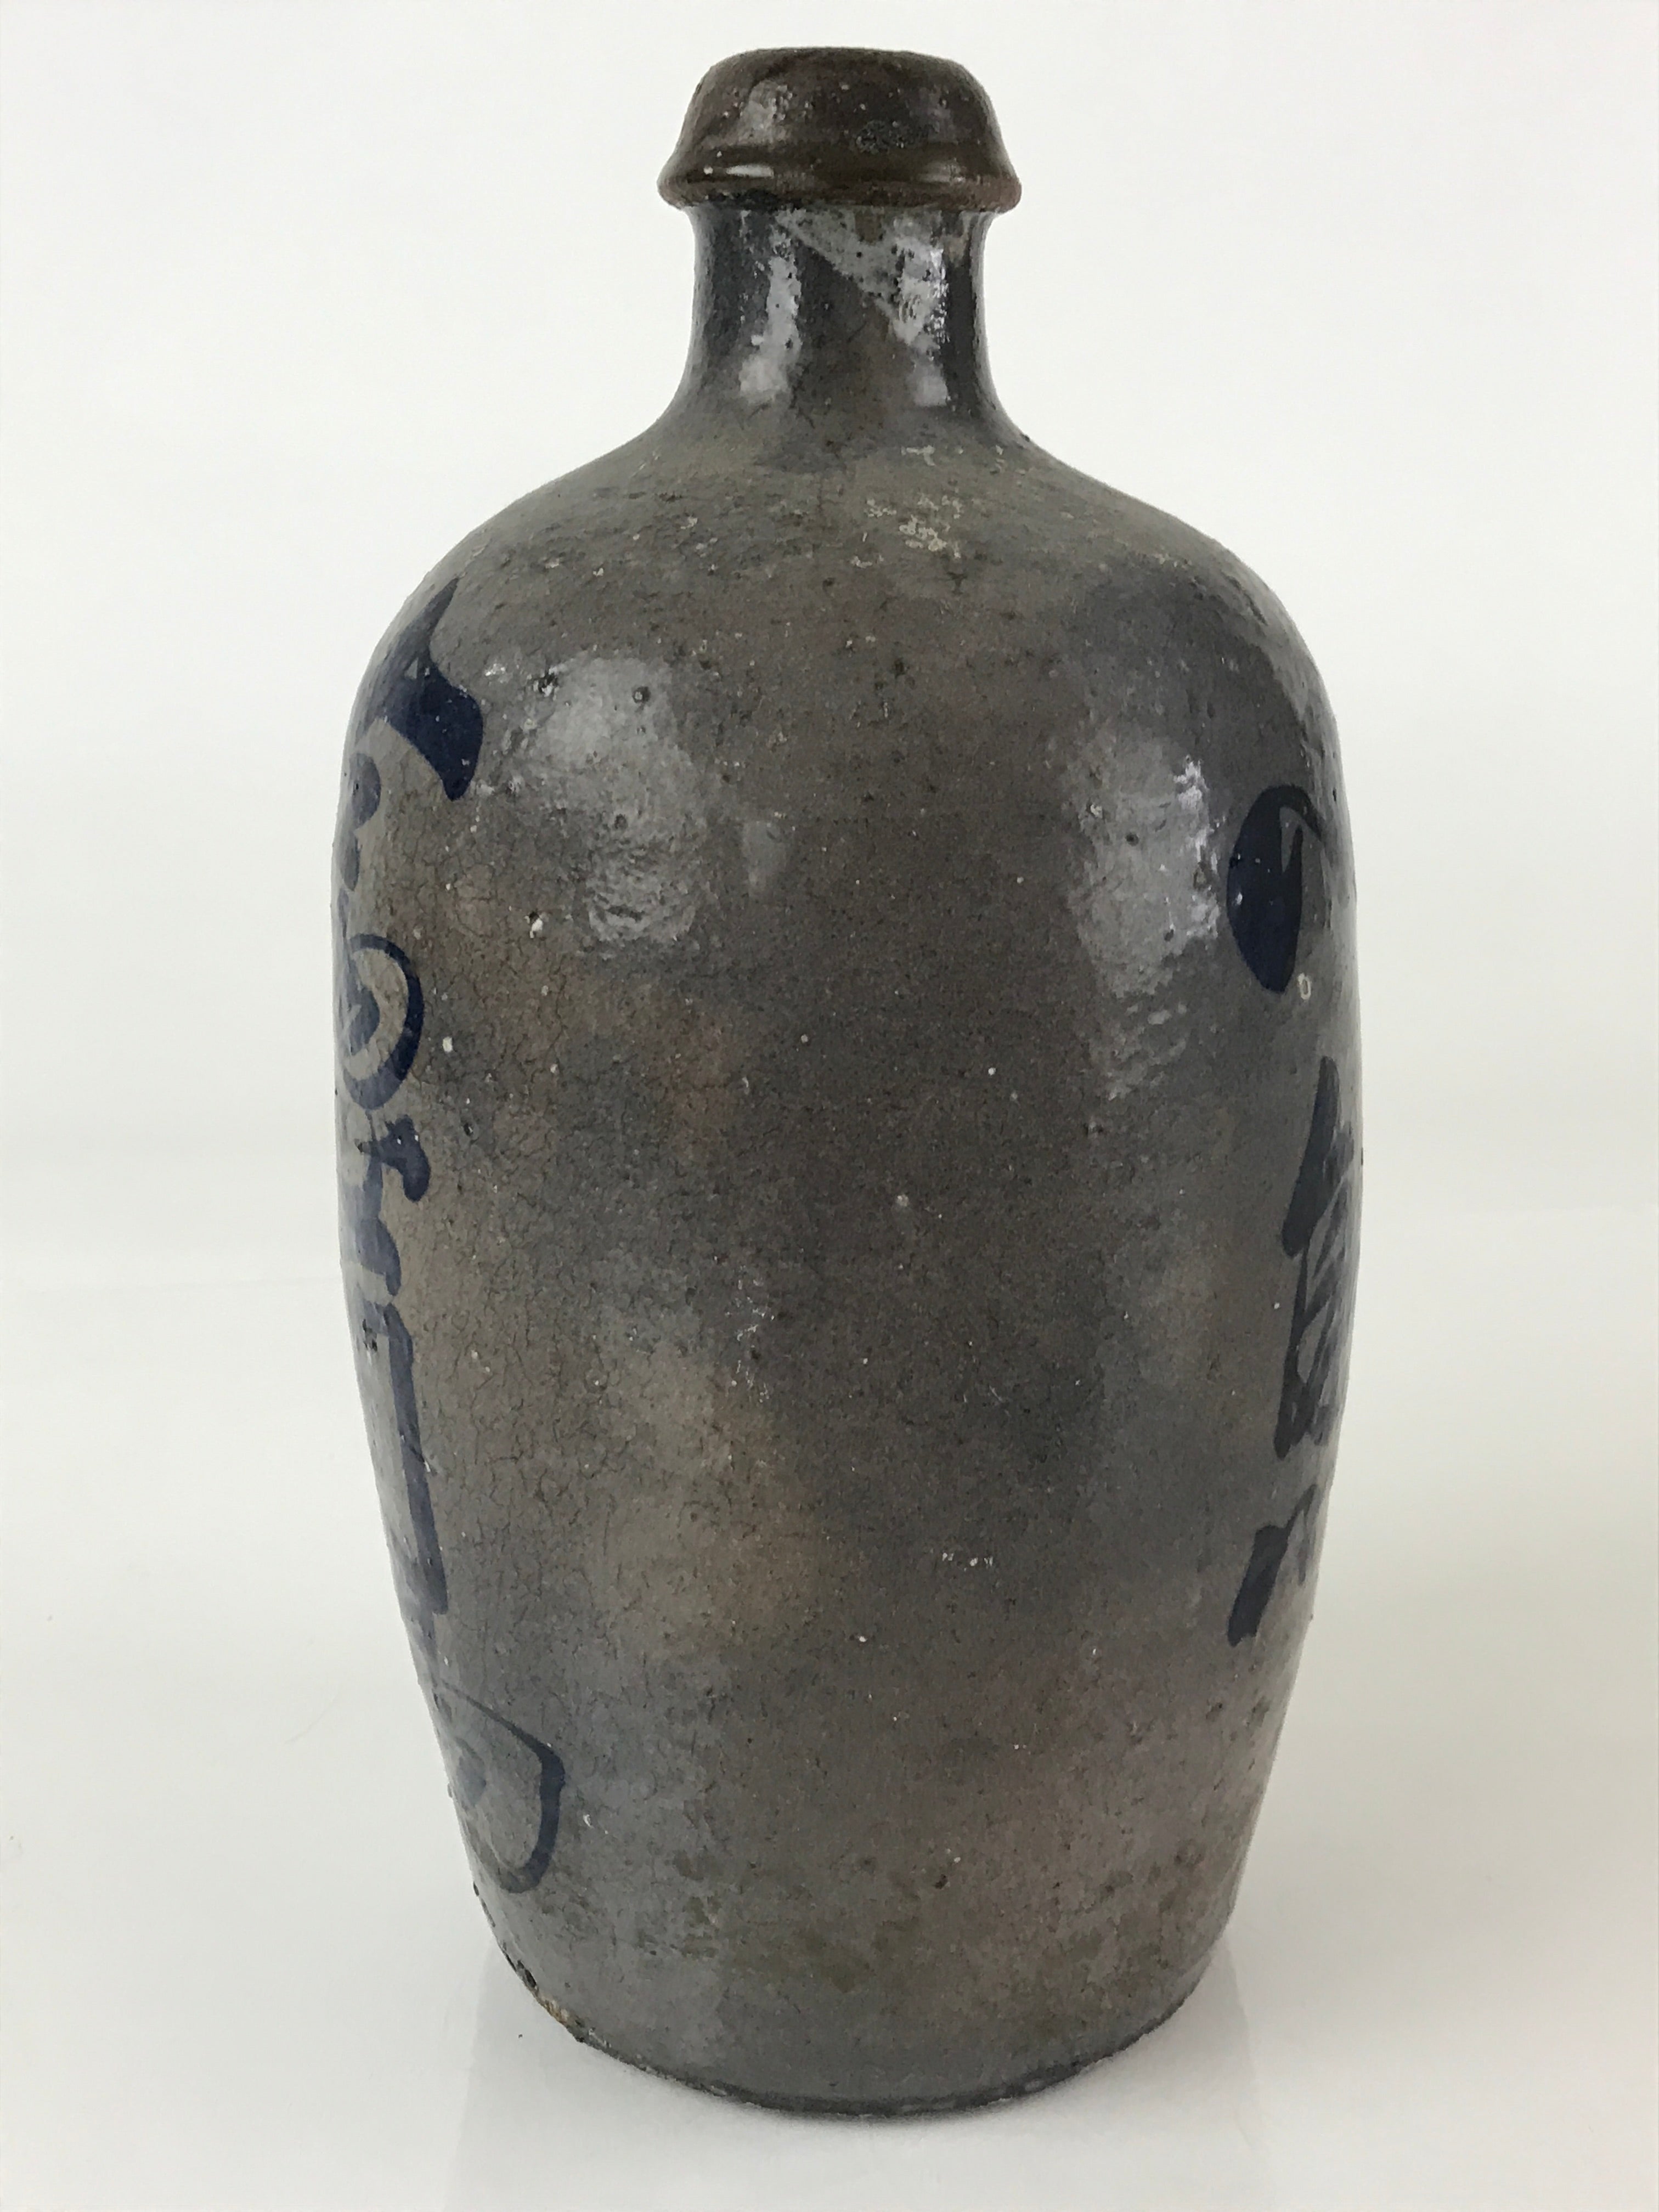 Japanese Ceramic Sake Bottle Tokkuri Vtg Pottery Brown Hand-Written Kanji TS486